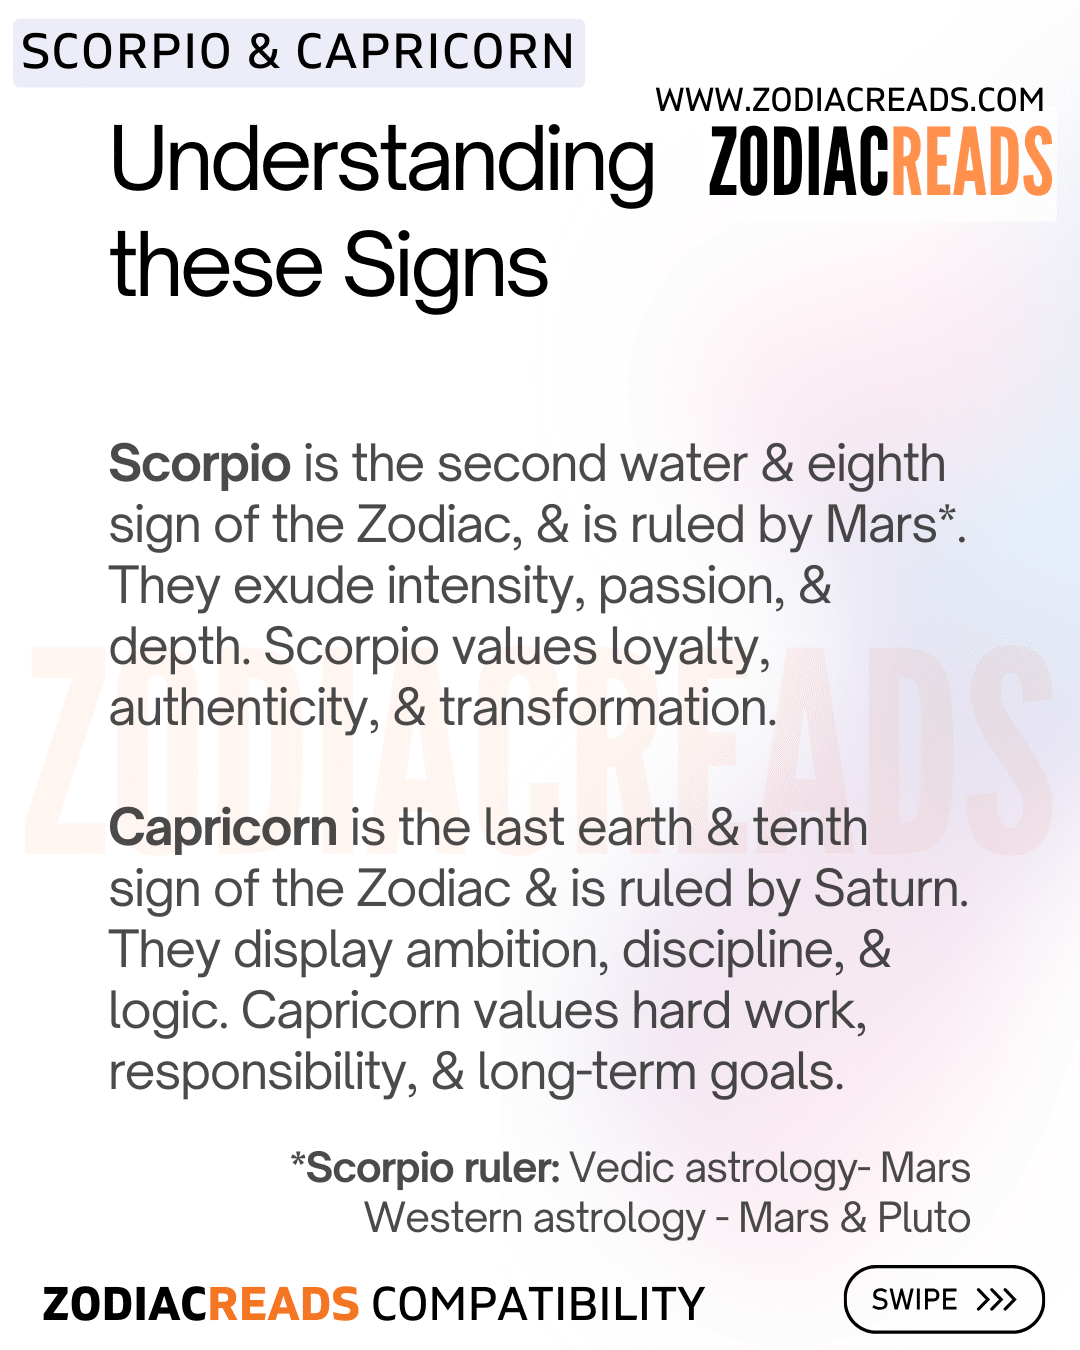 Understanding Scorpio and Capricorn